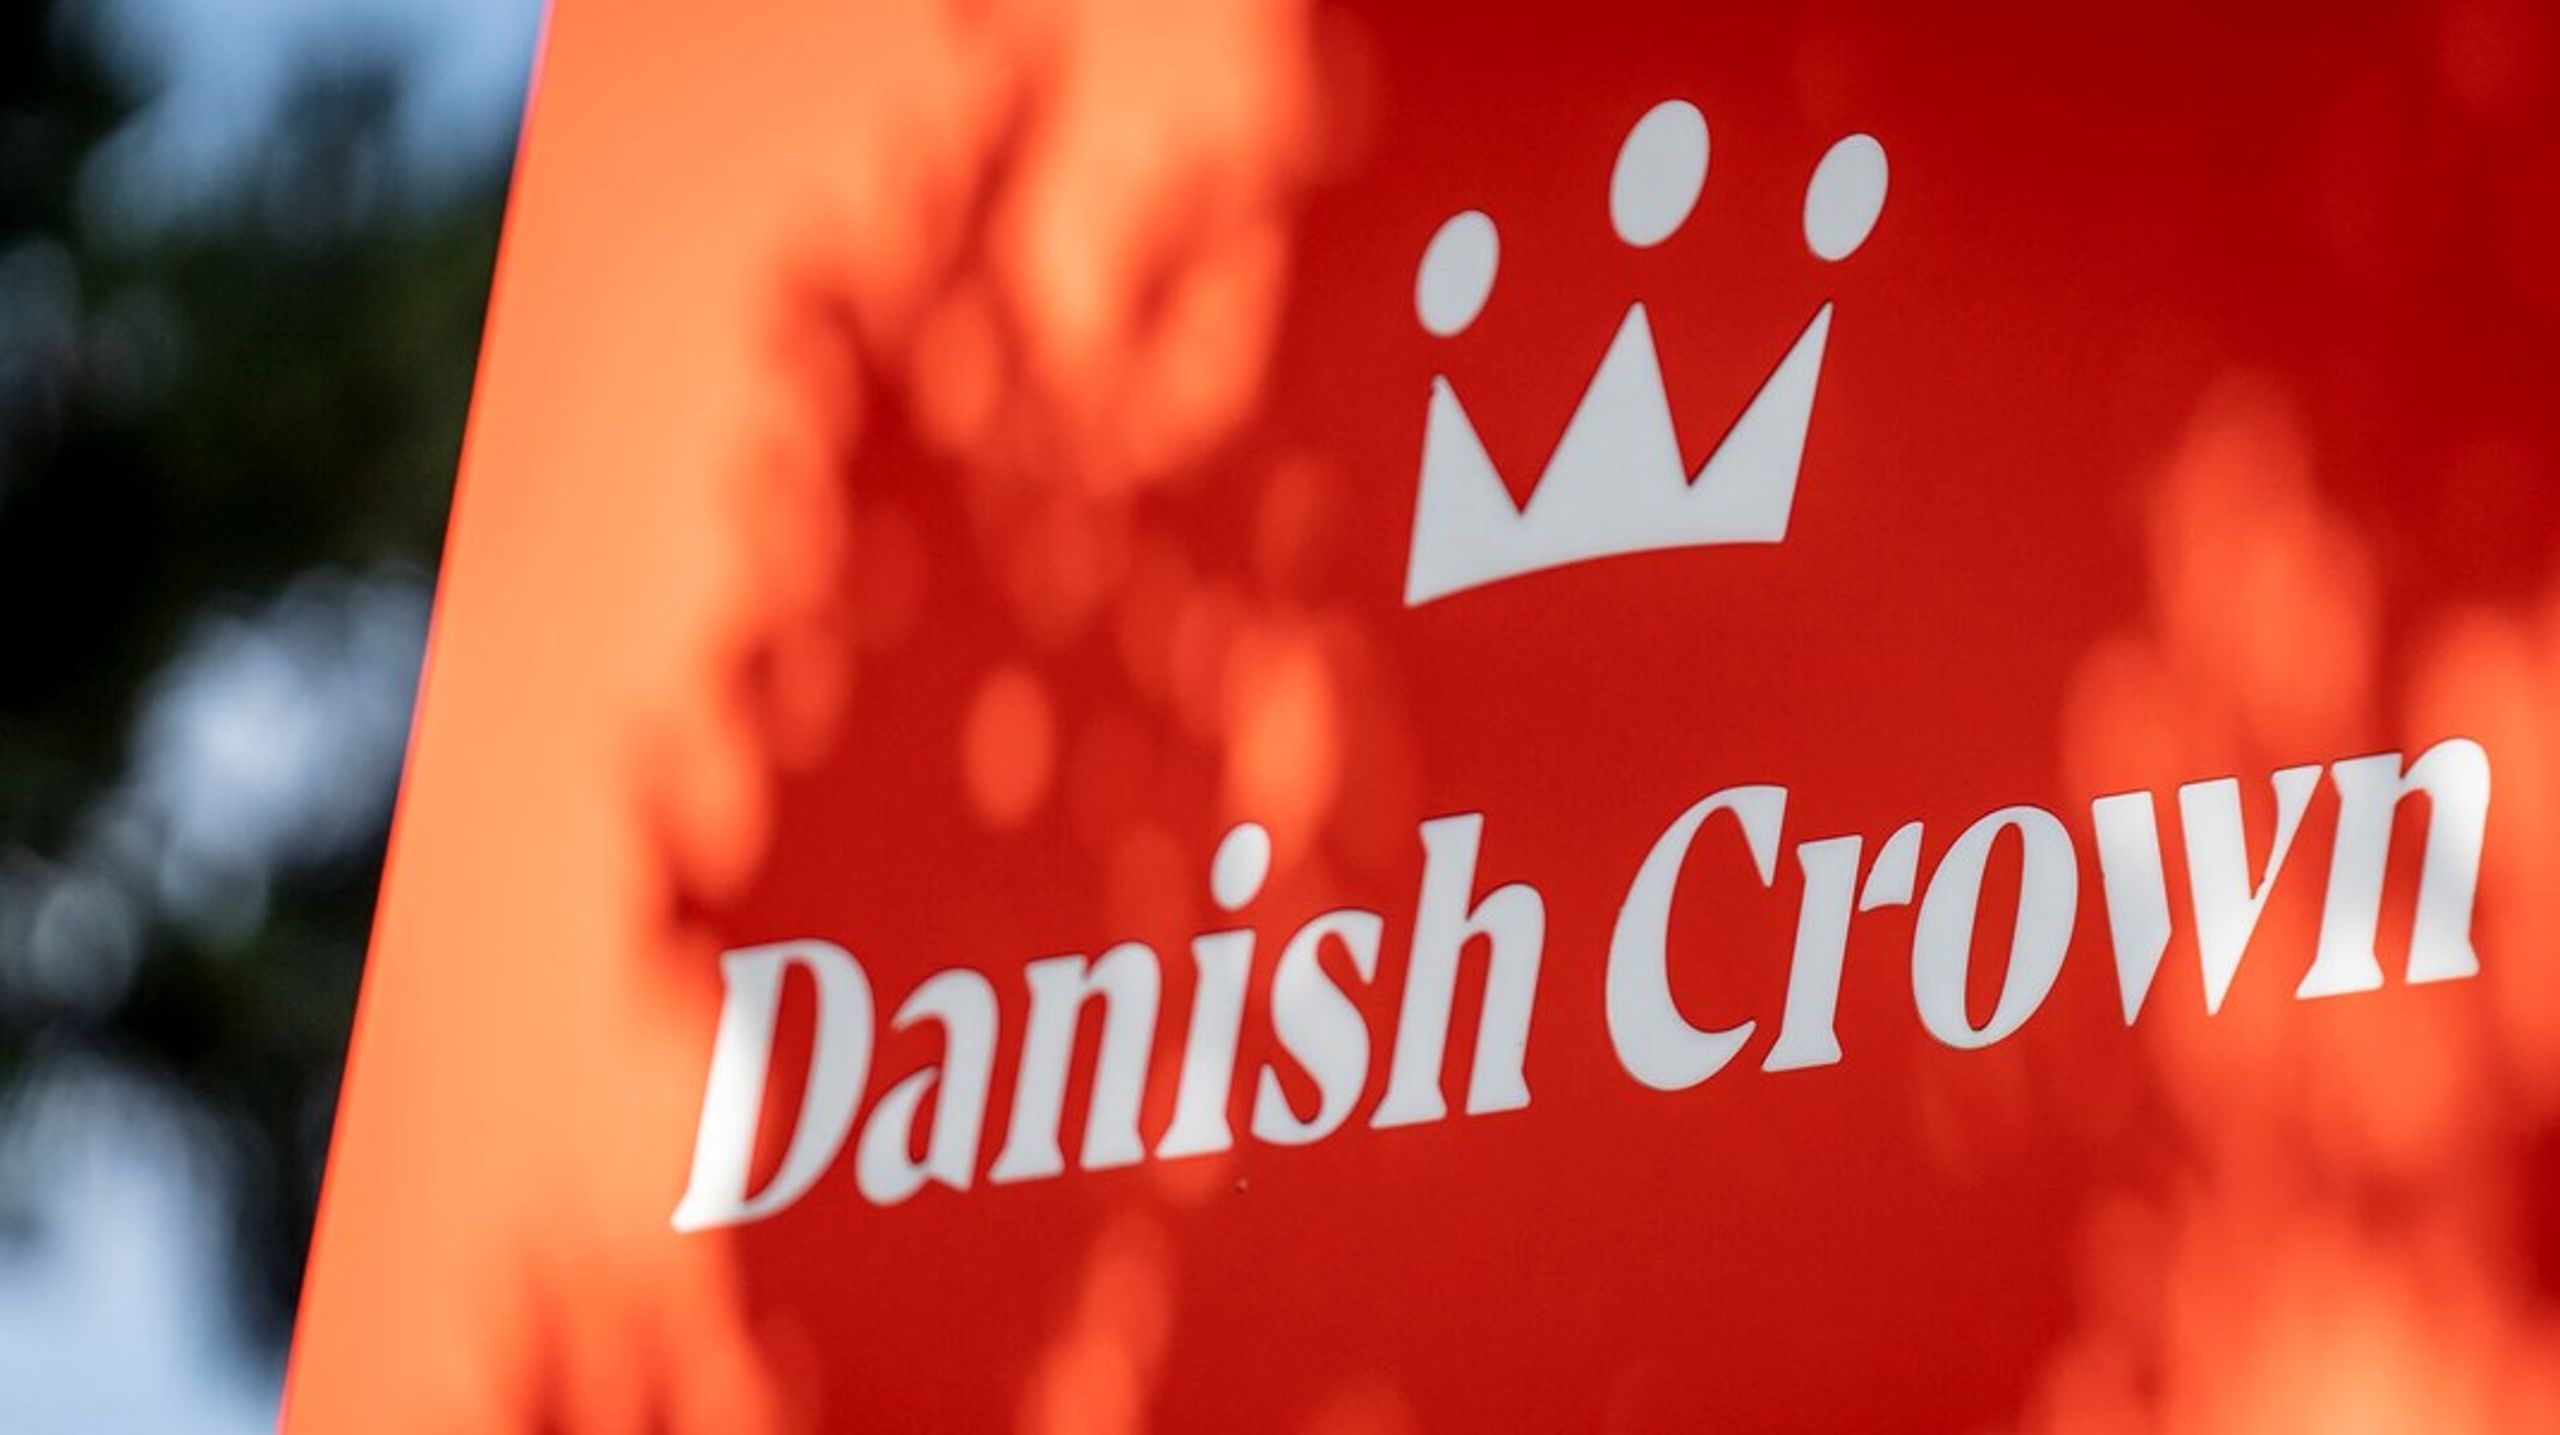 Danish Crowns økologiske datterselskab, Friland, får ny direktør. Det bliver Søren Tinggaard, der hentes hjem fra en stilling hos virksomhedens salgskontor i Shanghai.&nbsp;